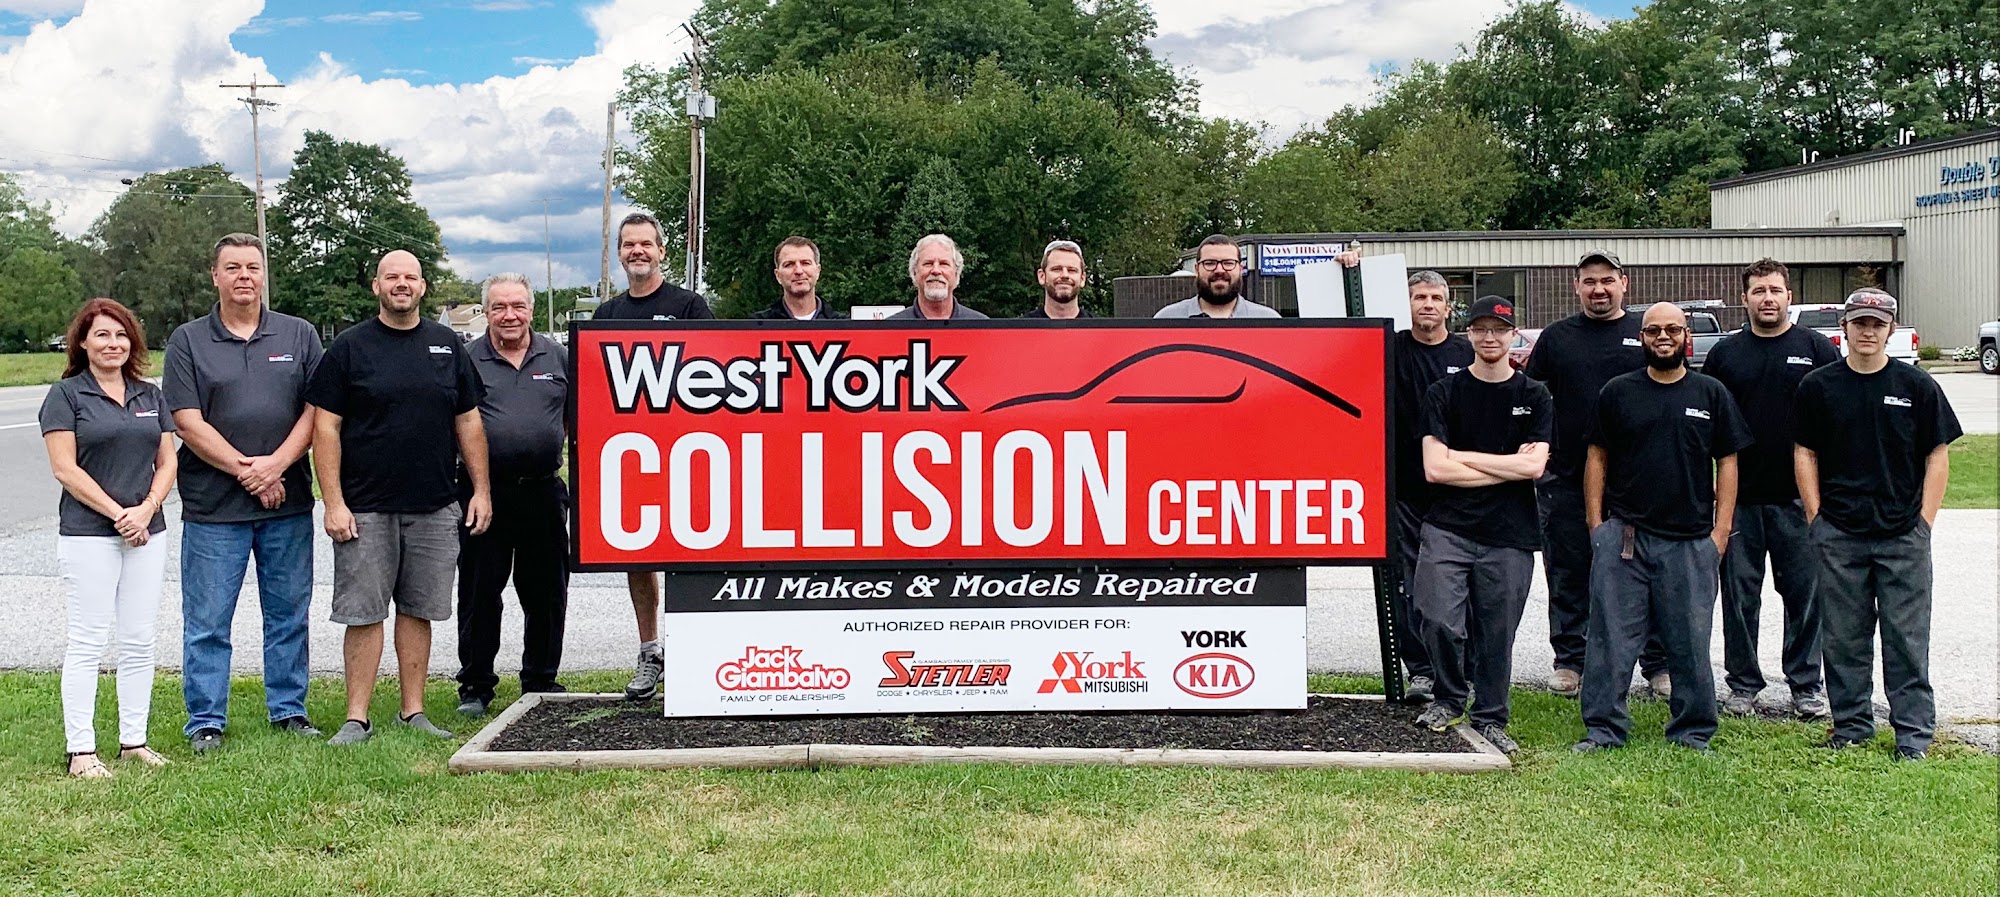 West York Collision Center